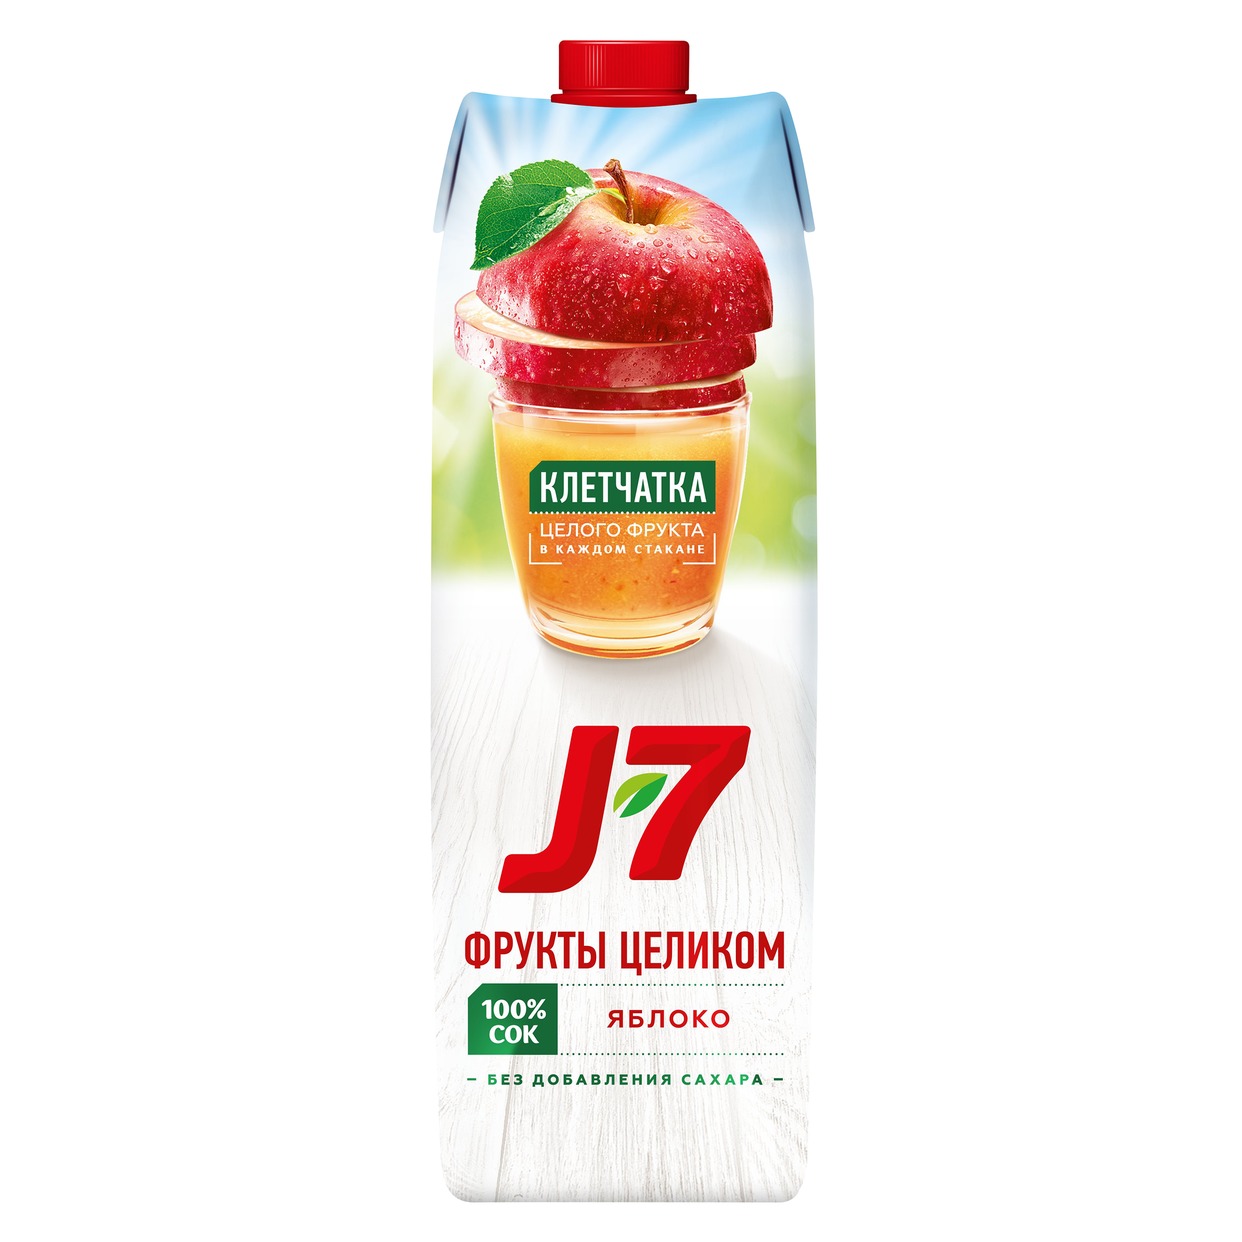 Сок J7 из яблок с мякотью для детского питания 0.97л.